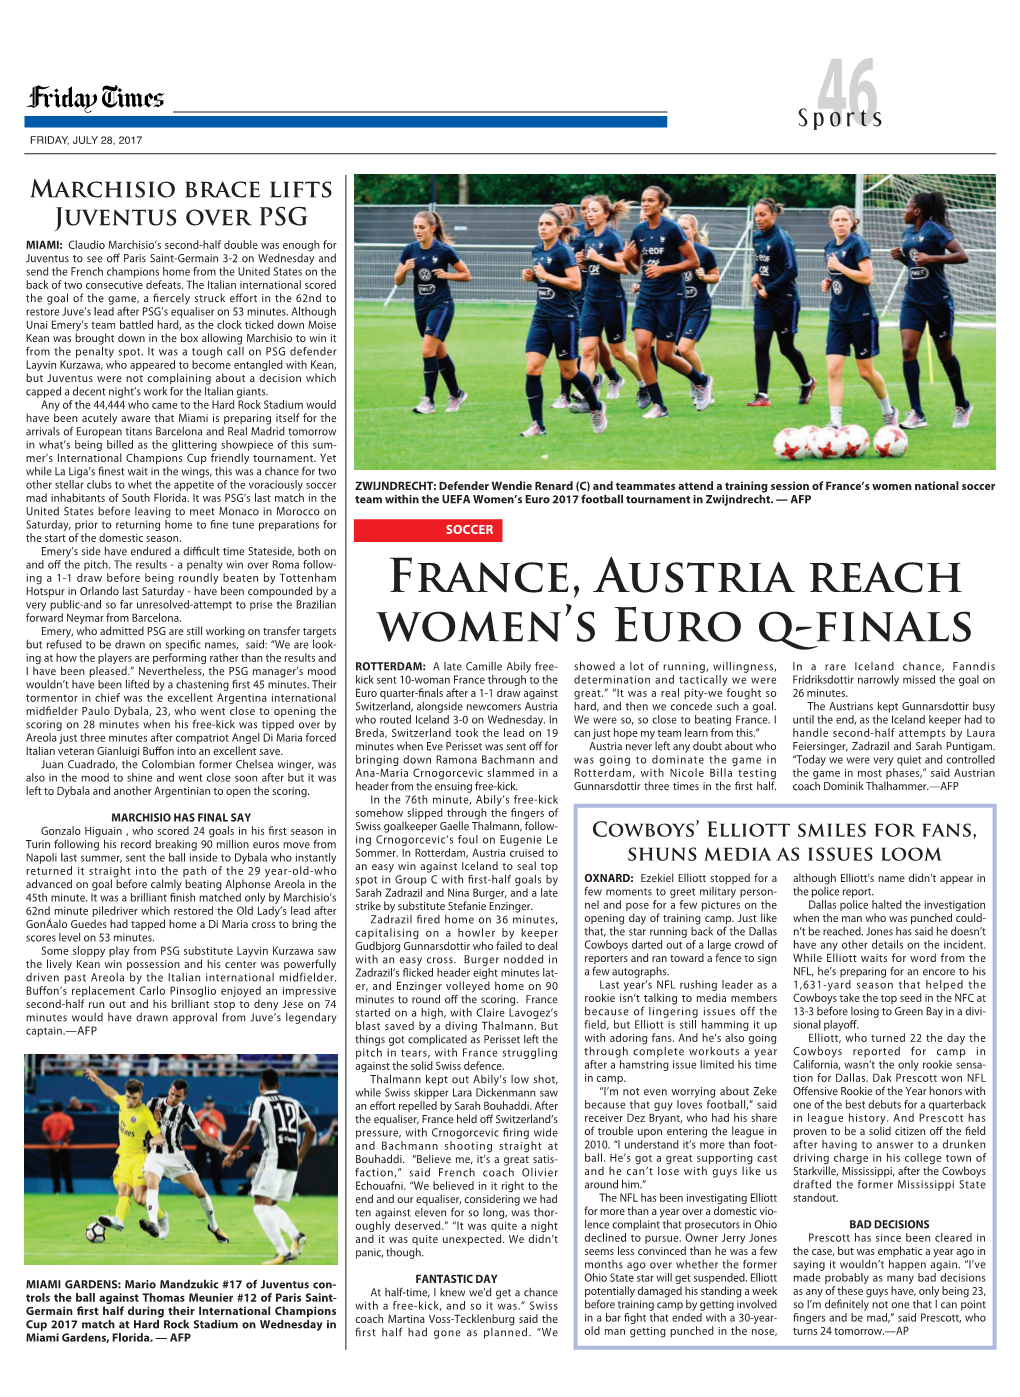 France, Austria Reach Women's EURO Q-Finals